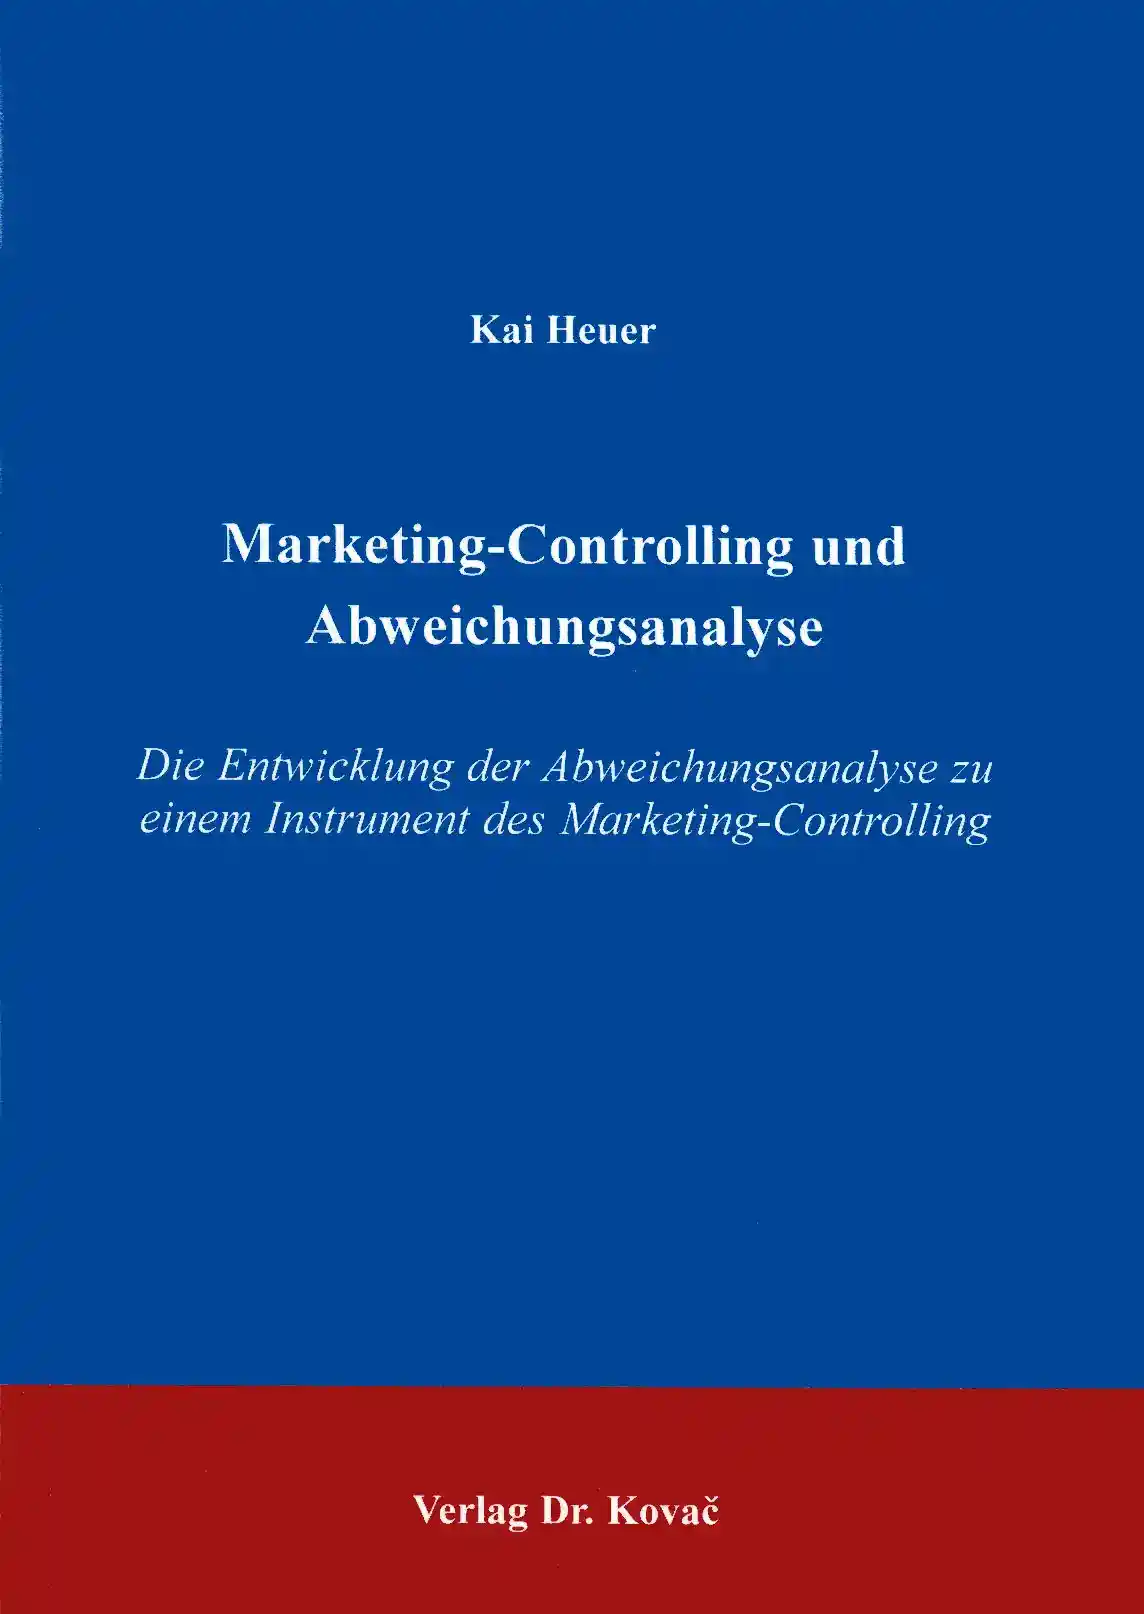  Dissertation: MarketingControlling und Abweichungsanalyse